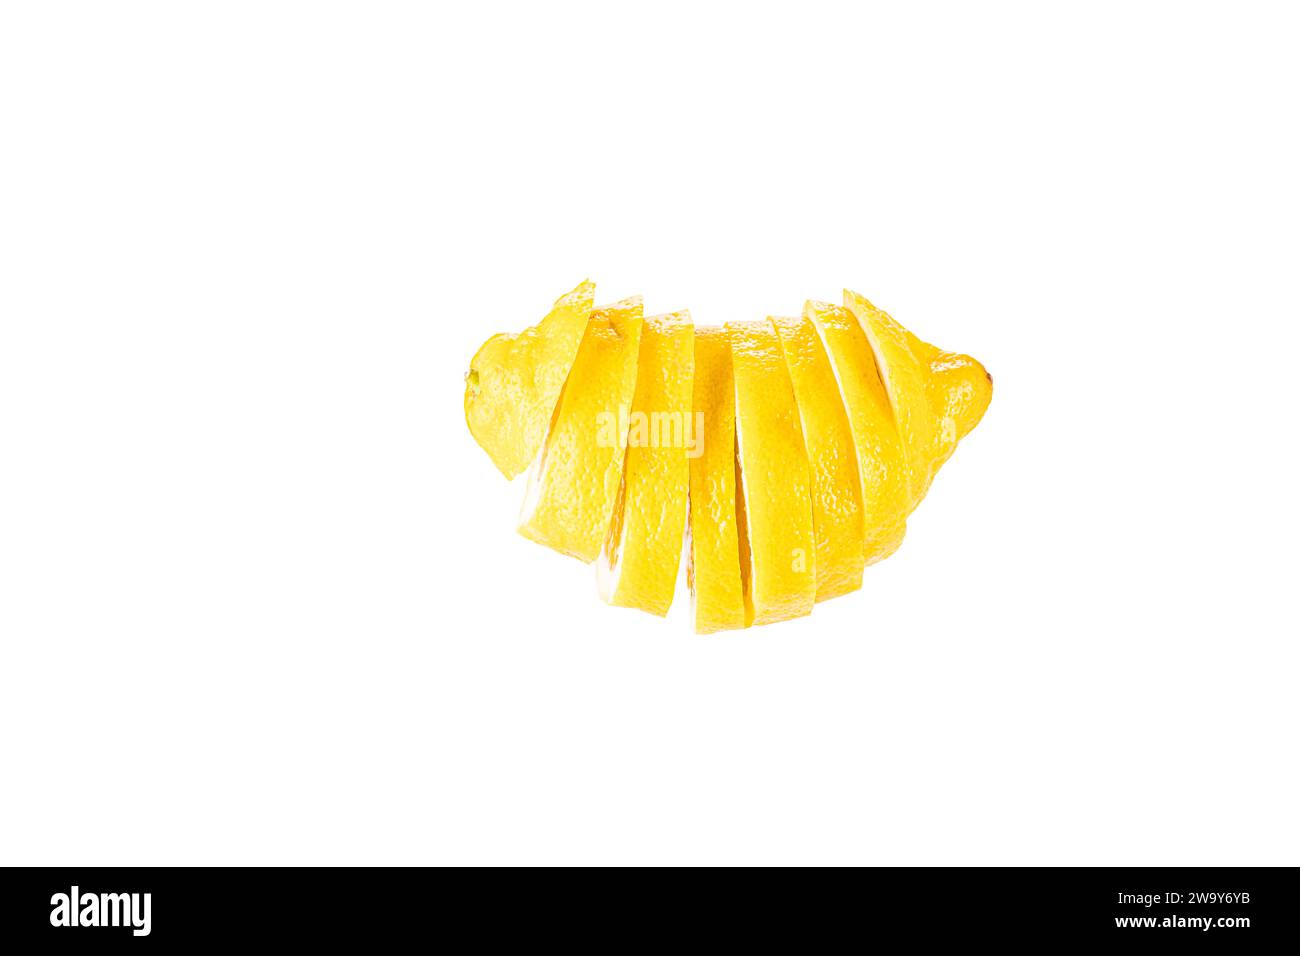 Zitrone in Scheiben geschnitten und frei schwebend vor weißem Hintergrund. Un limone tagliato a fette prima di uno sfondo bianco Foto Stock